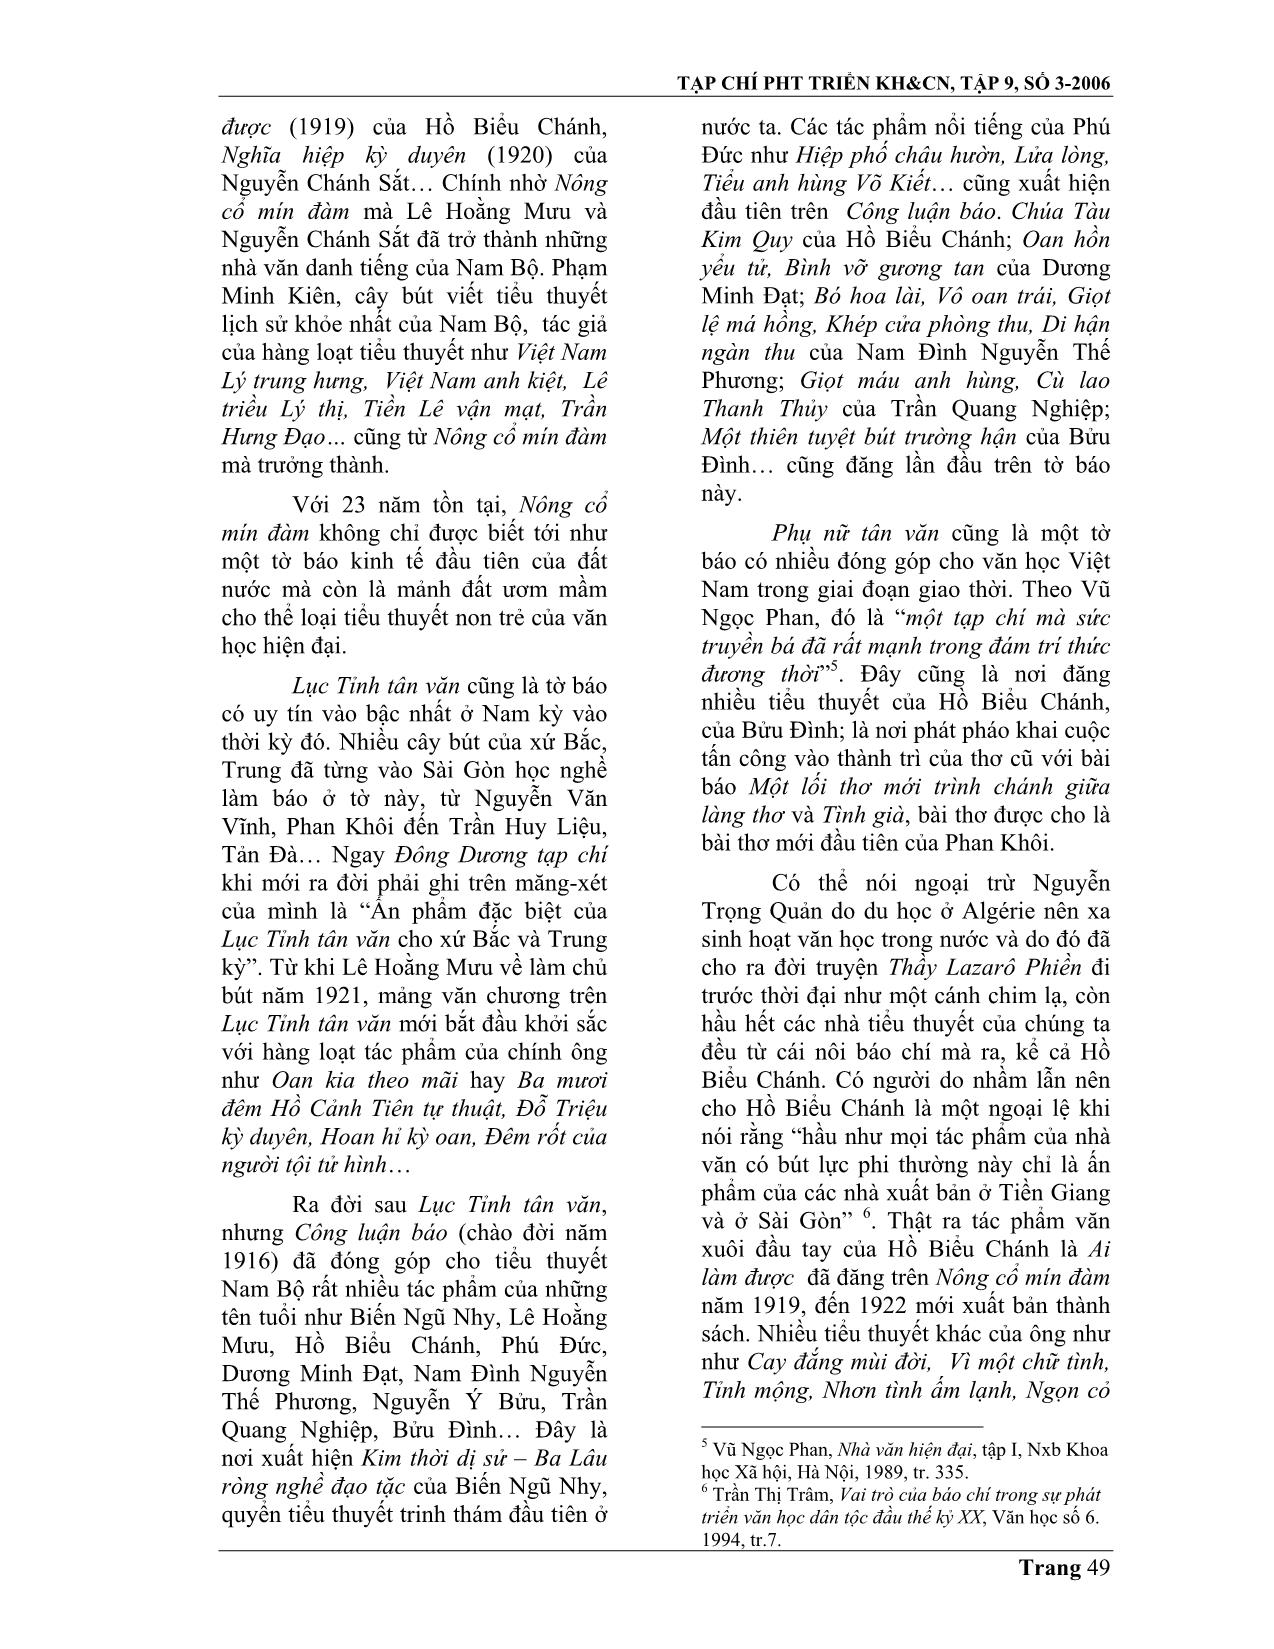 Báo chí quốc ngữ Latinh với sự hình thành và phát triển của tiểu thuyết Nam Bộ cuối thế kỷ XIX đầu thế kỷ XX trang 3